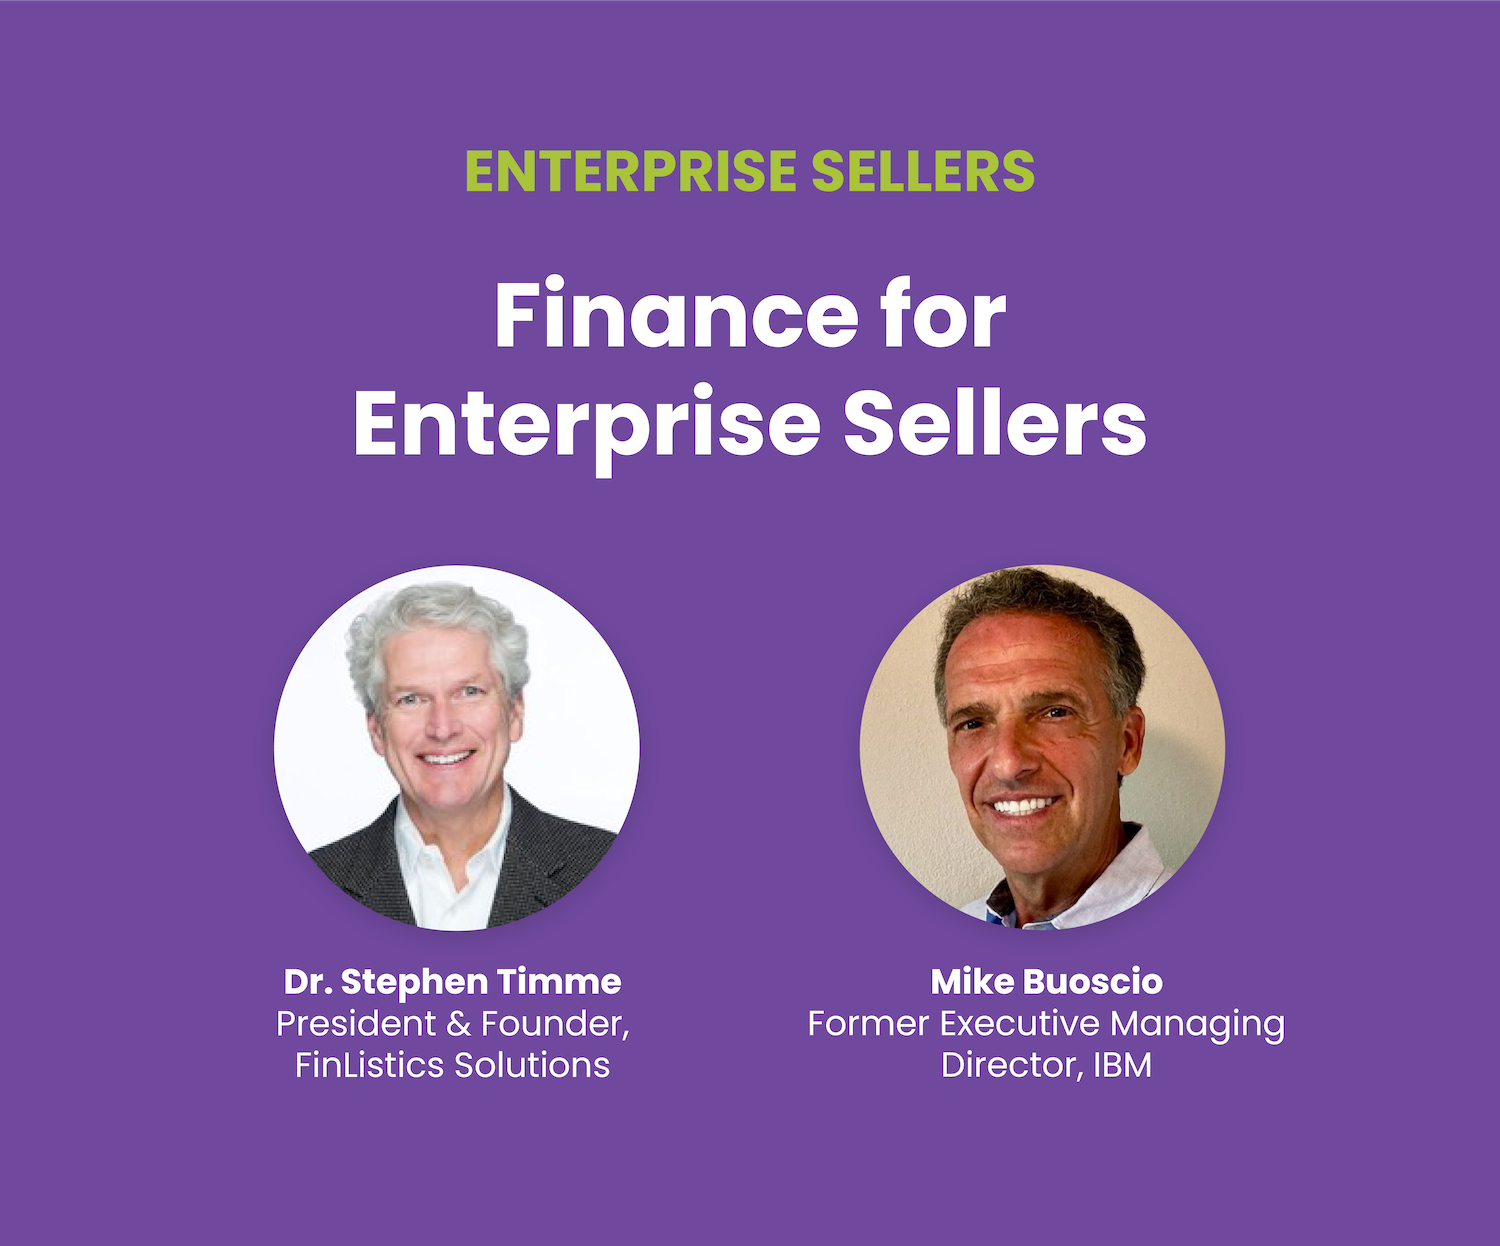 Finance for Enterprise Sellers